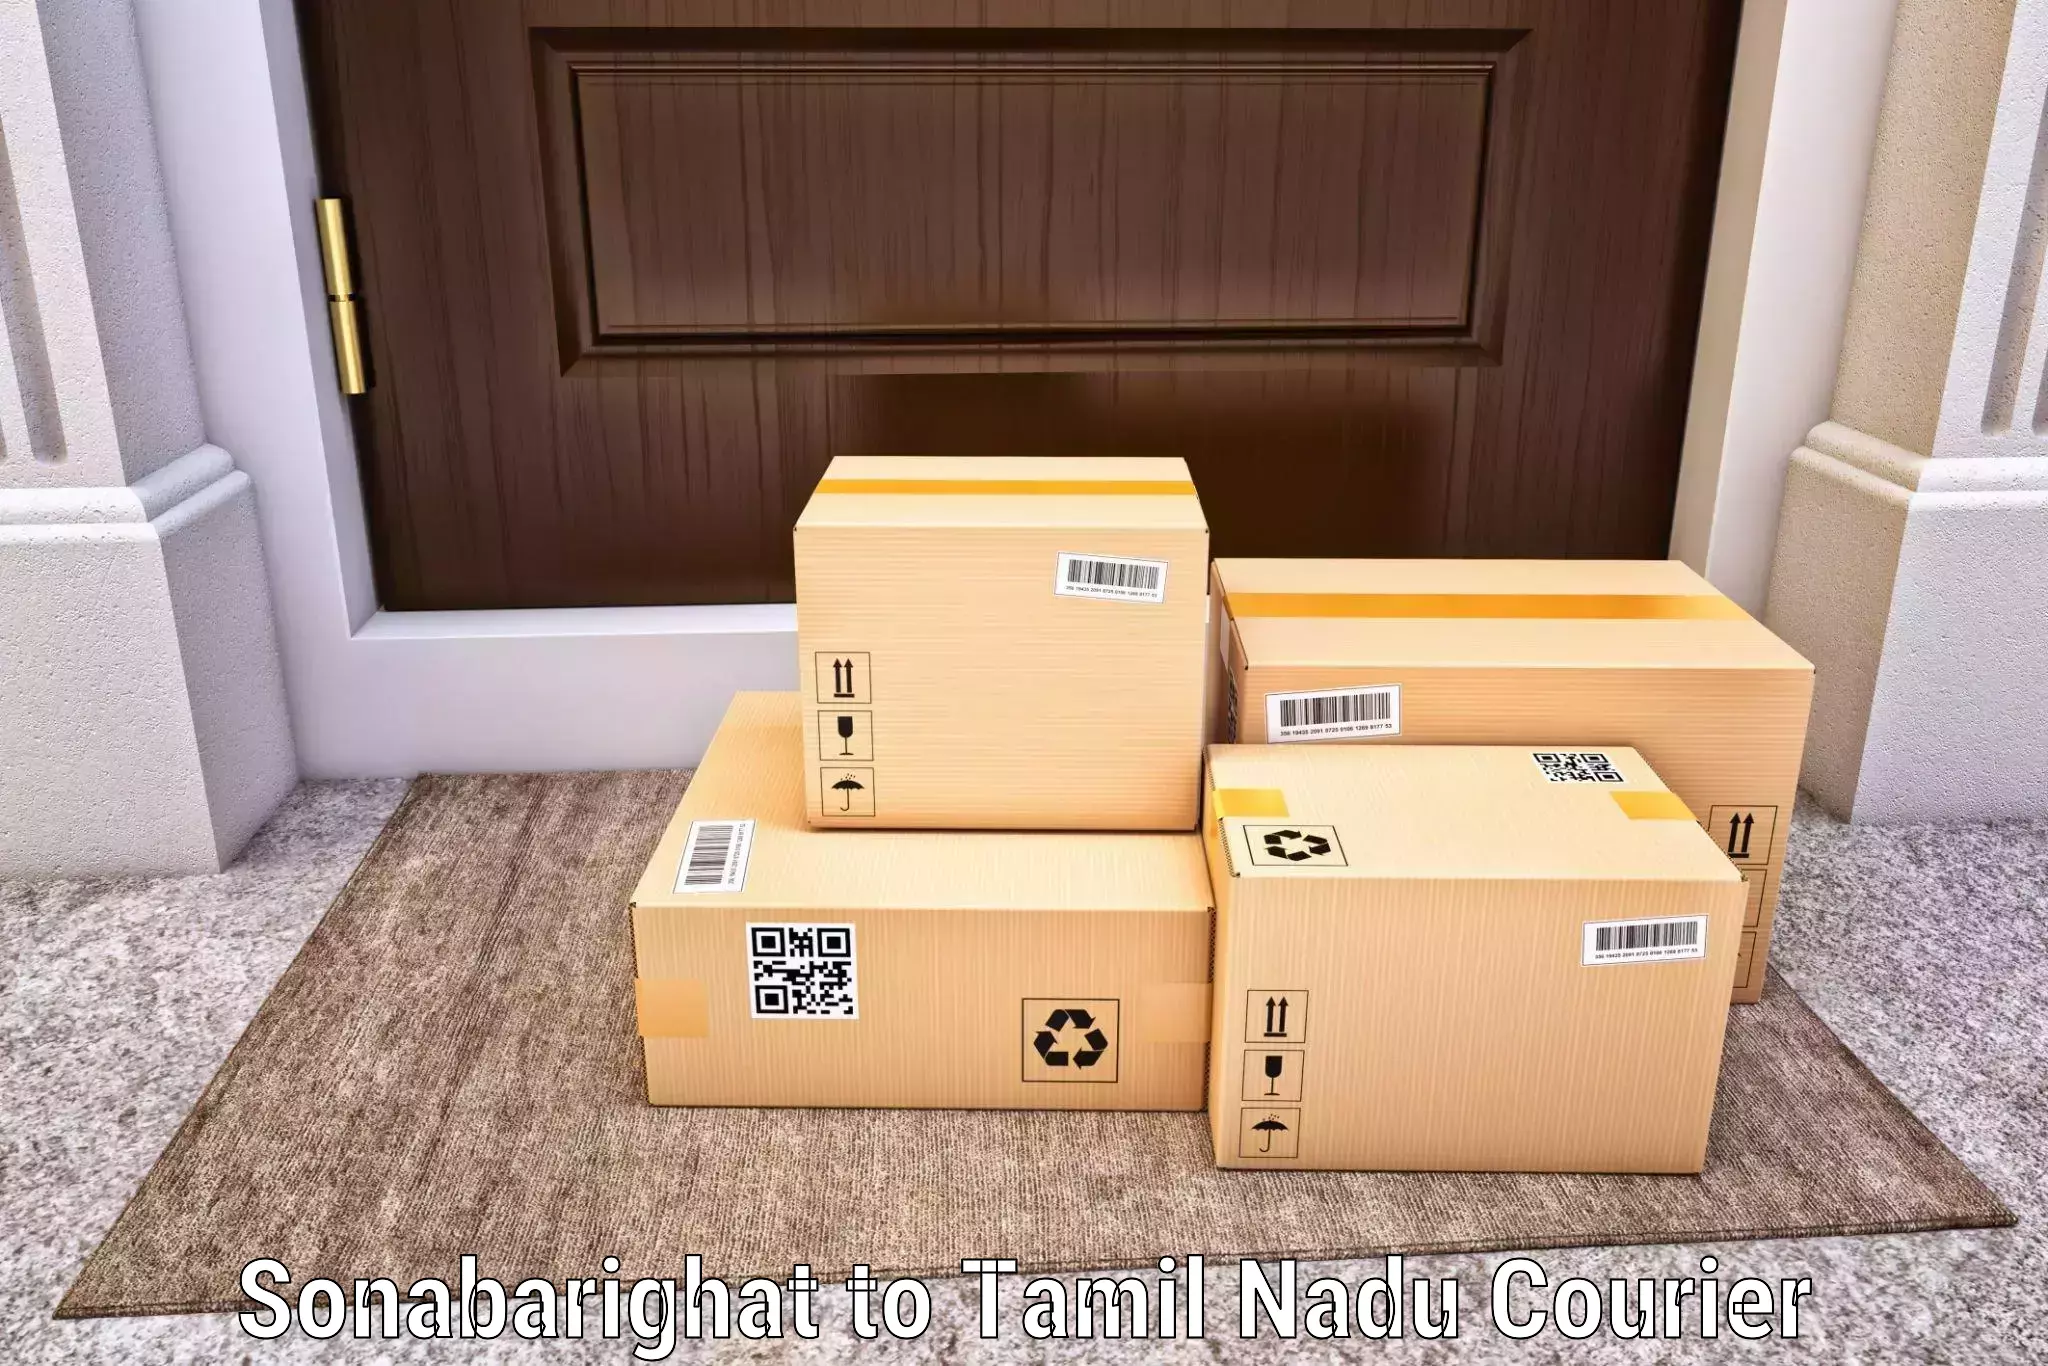 Smart parcel delivery Sonabarighat to Viluppuram